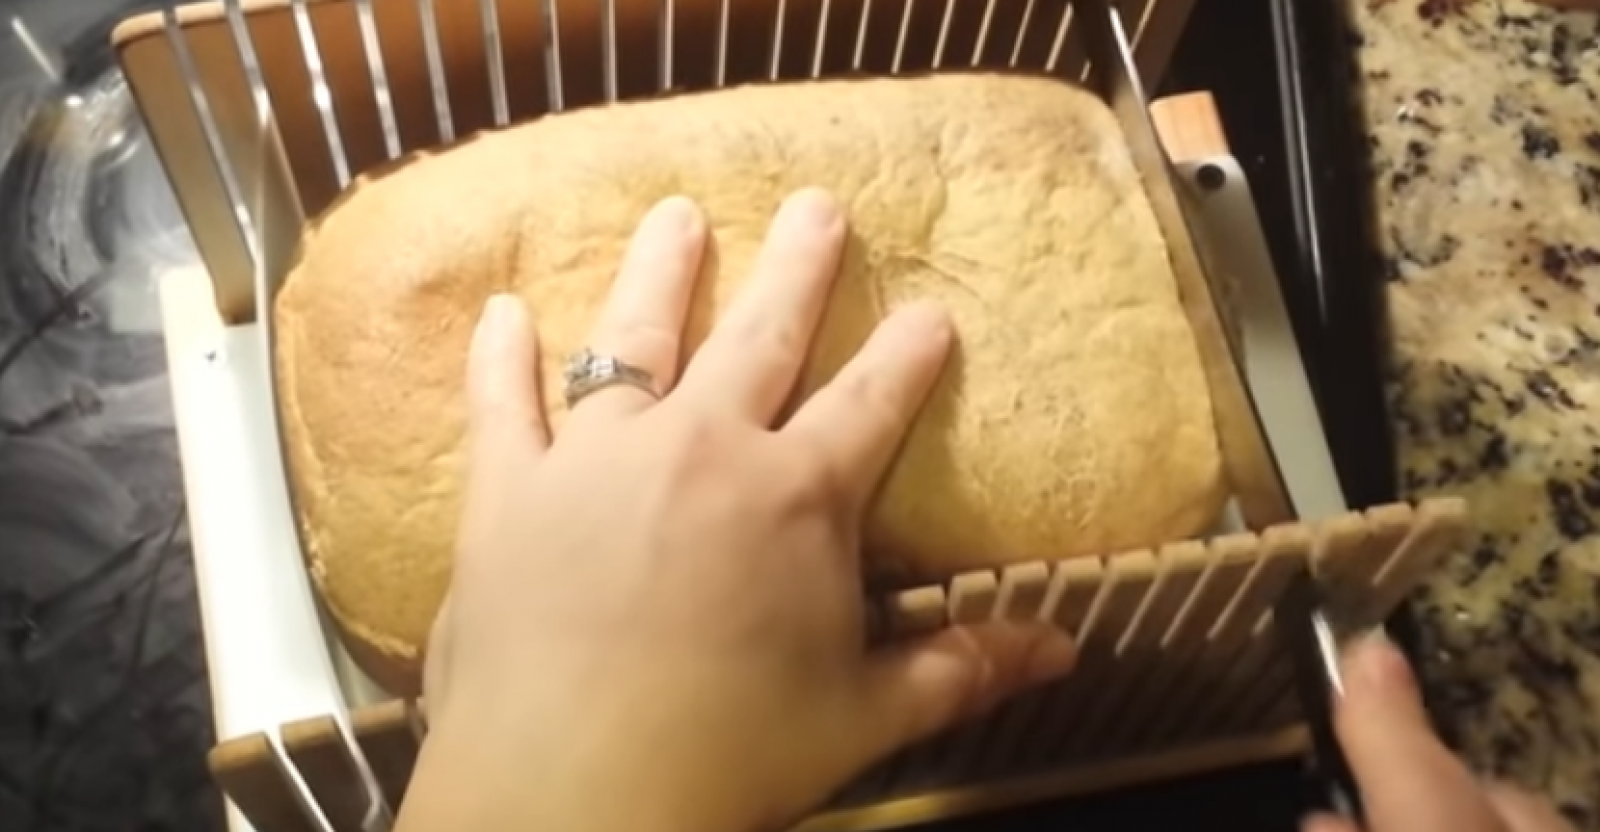 homemade bread slicer